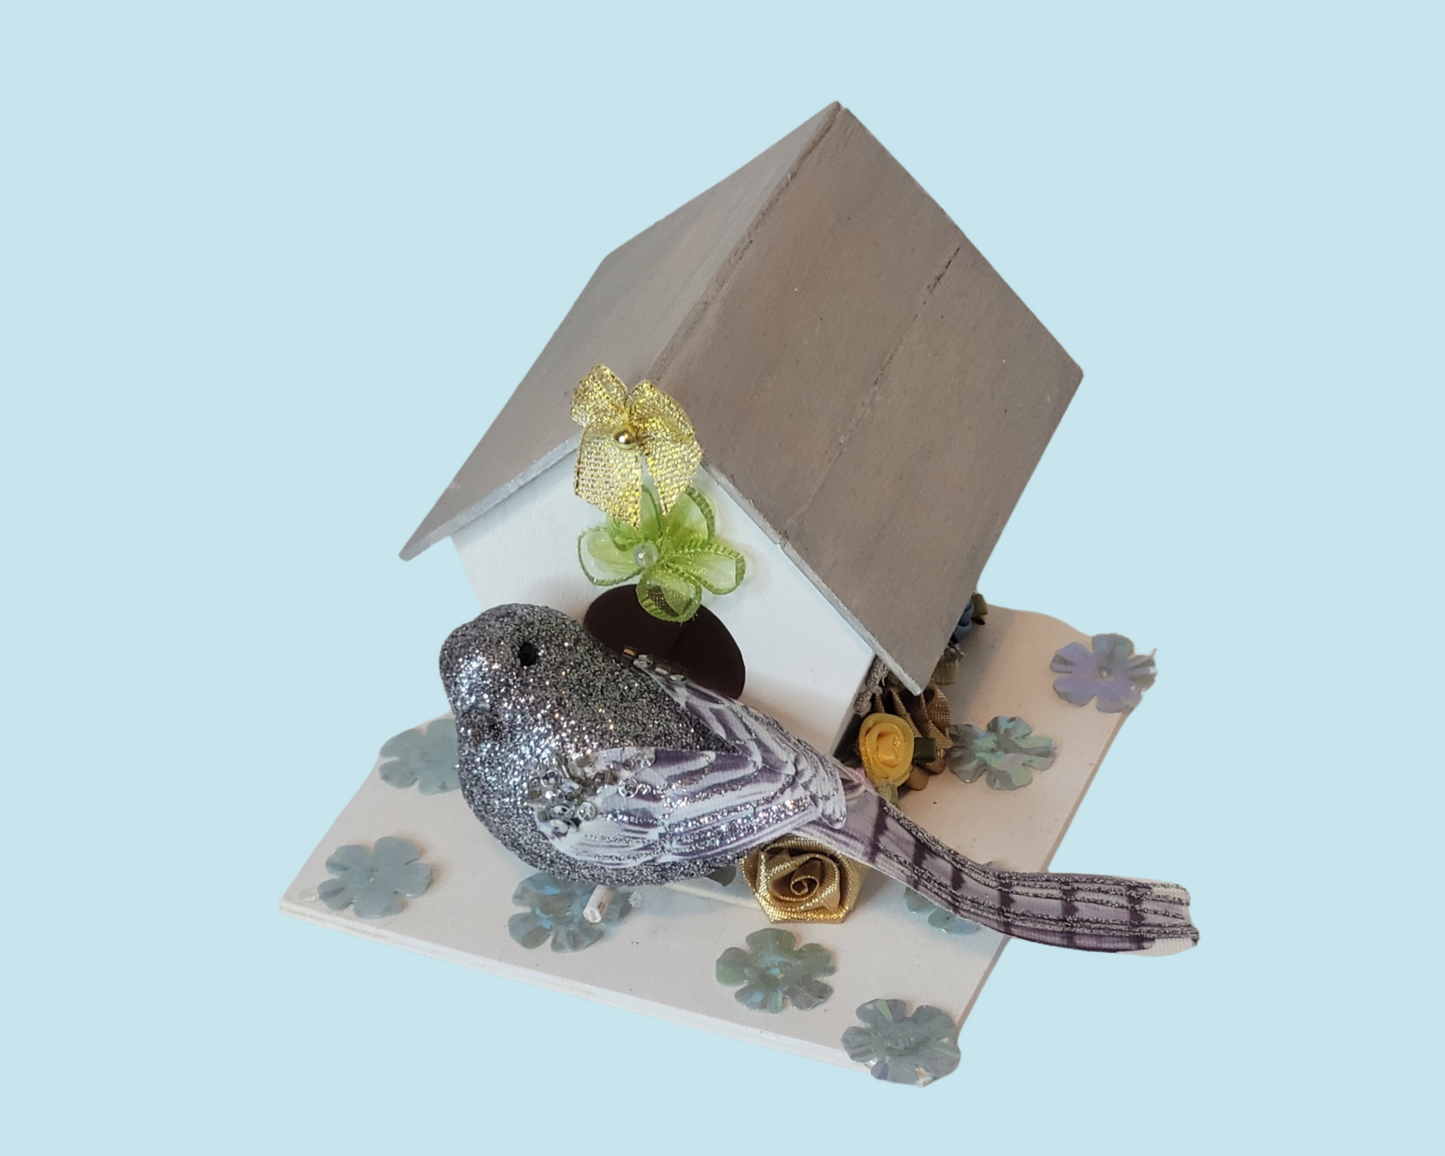 Decorative Birdhouse, Birdhouses